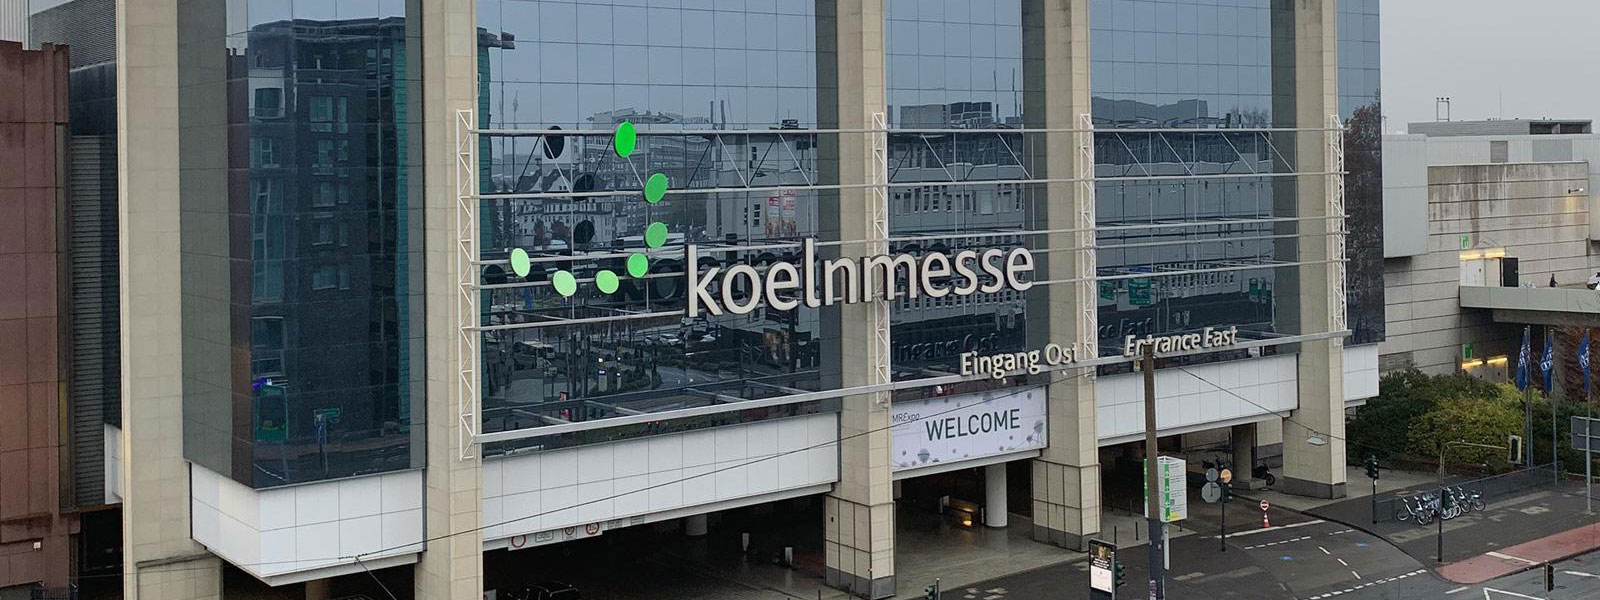 PMRExpo 2018 at Koelnmesse